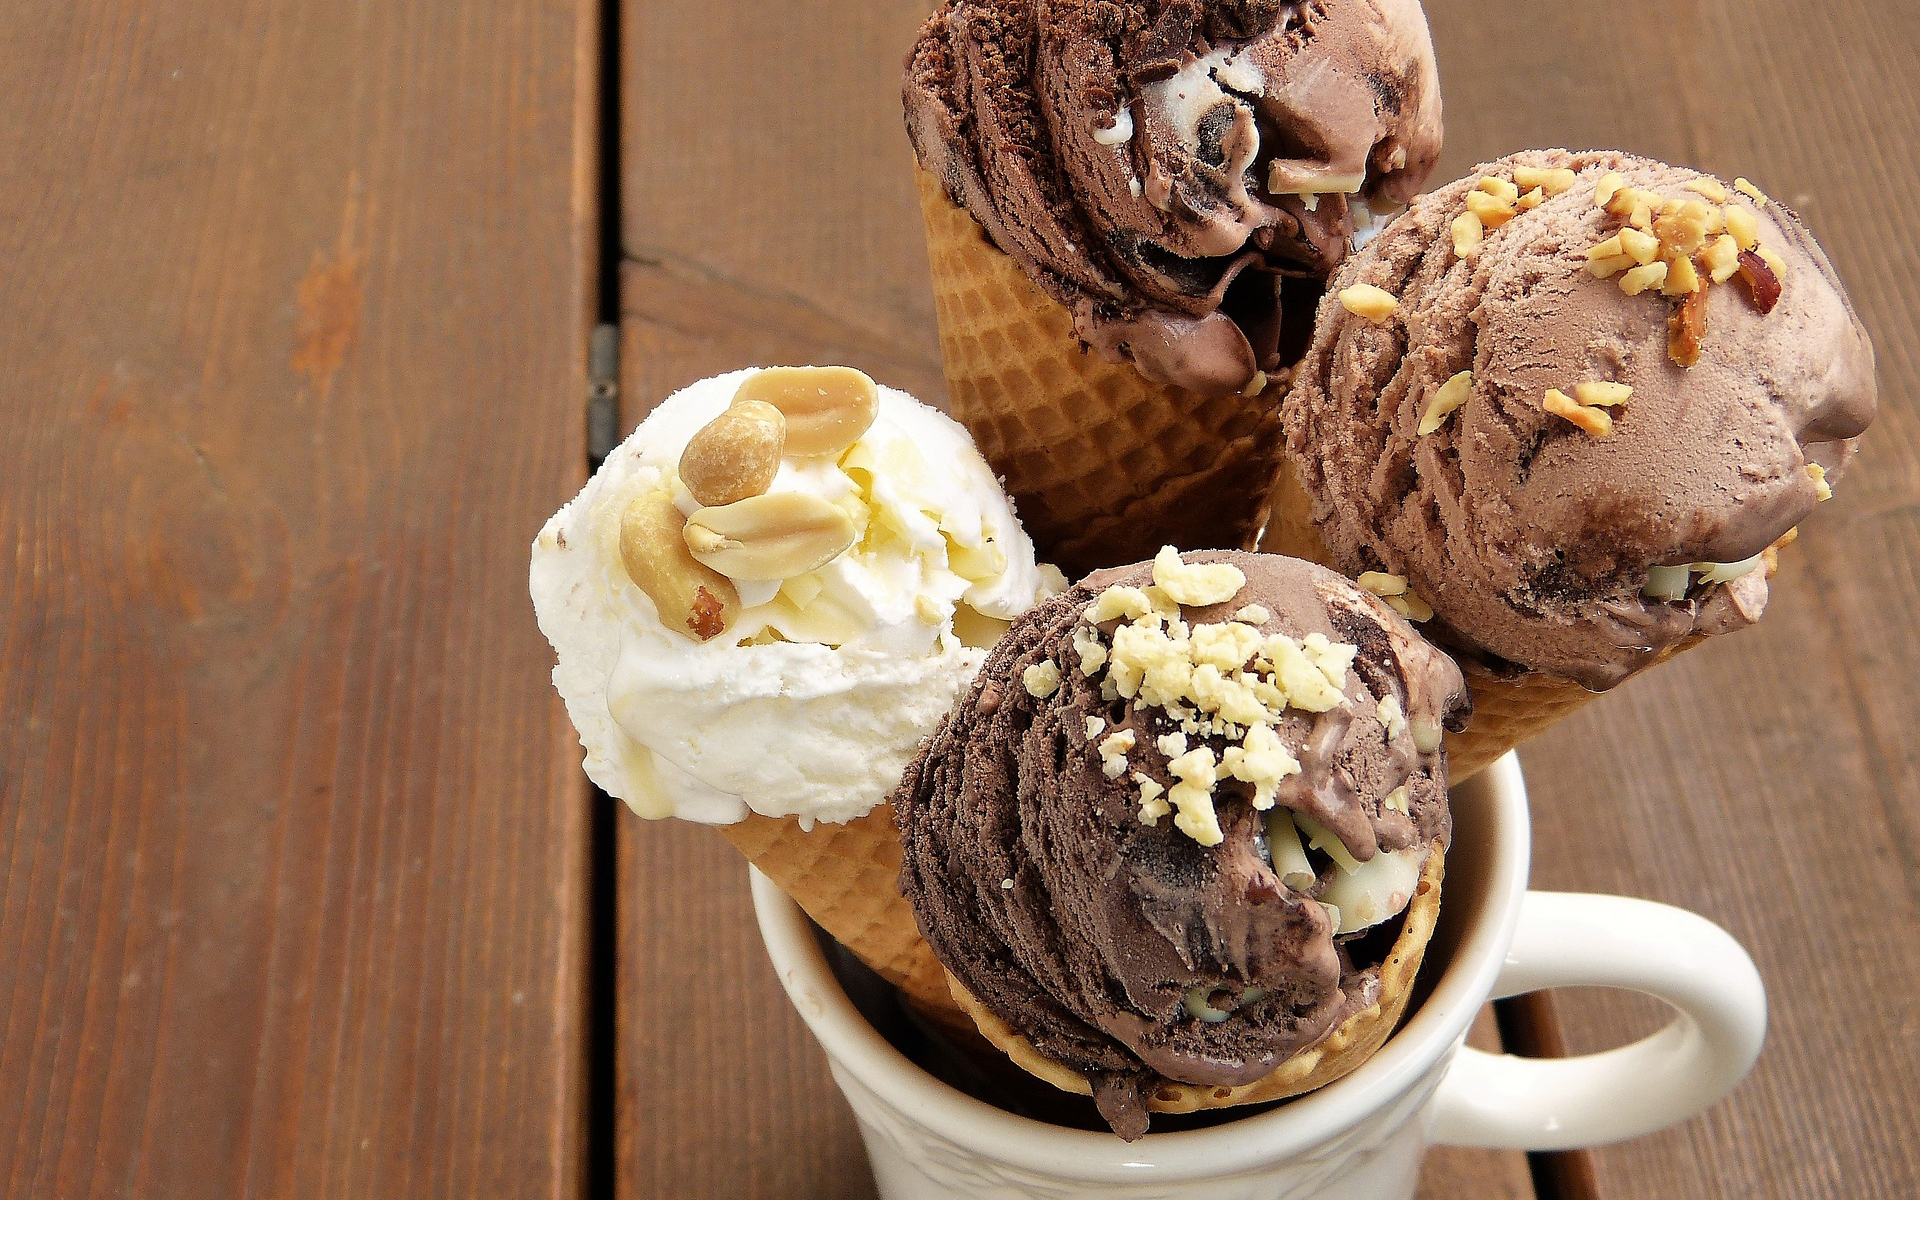 Fotografía de cuatro conos de helado insertados en una taza blanca.